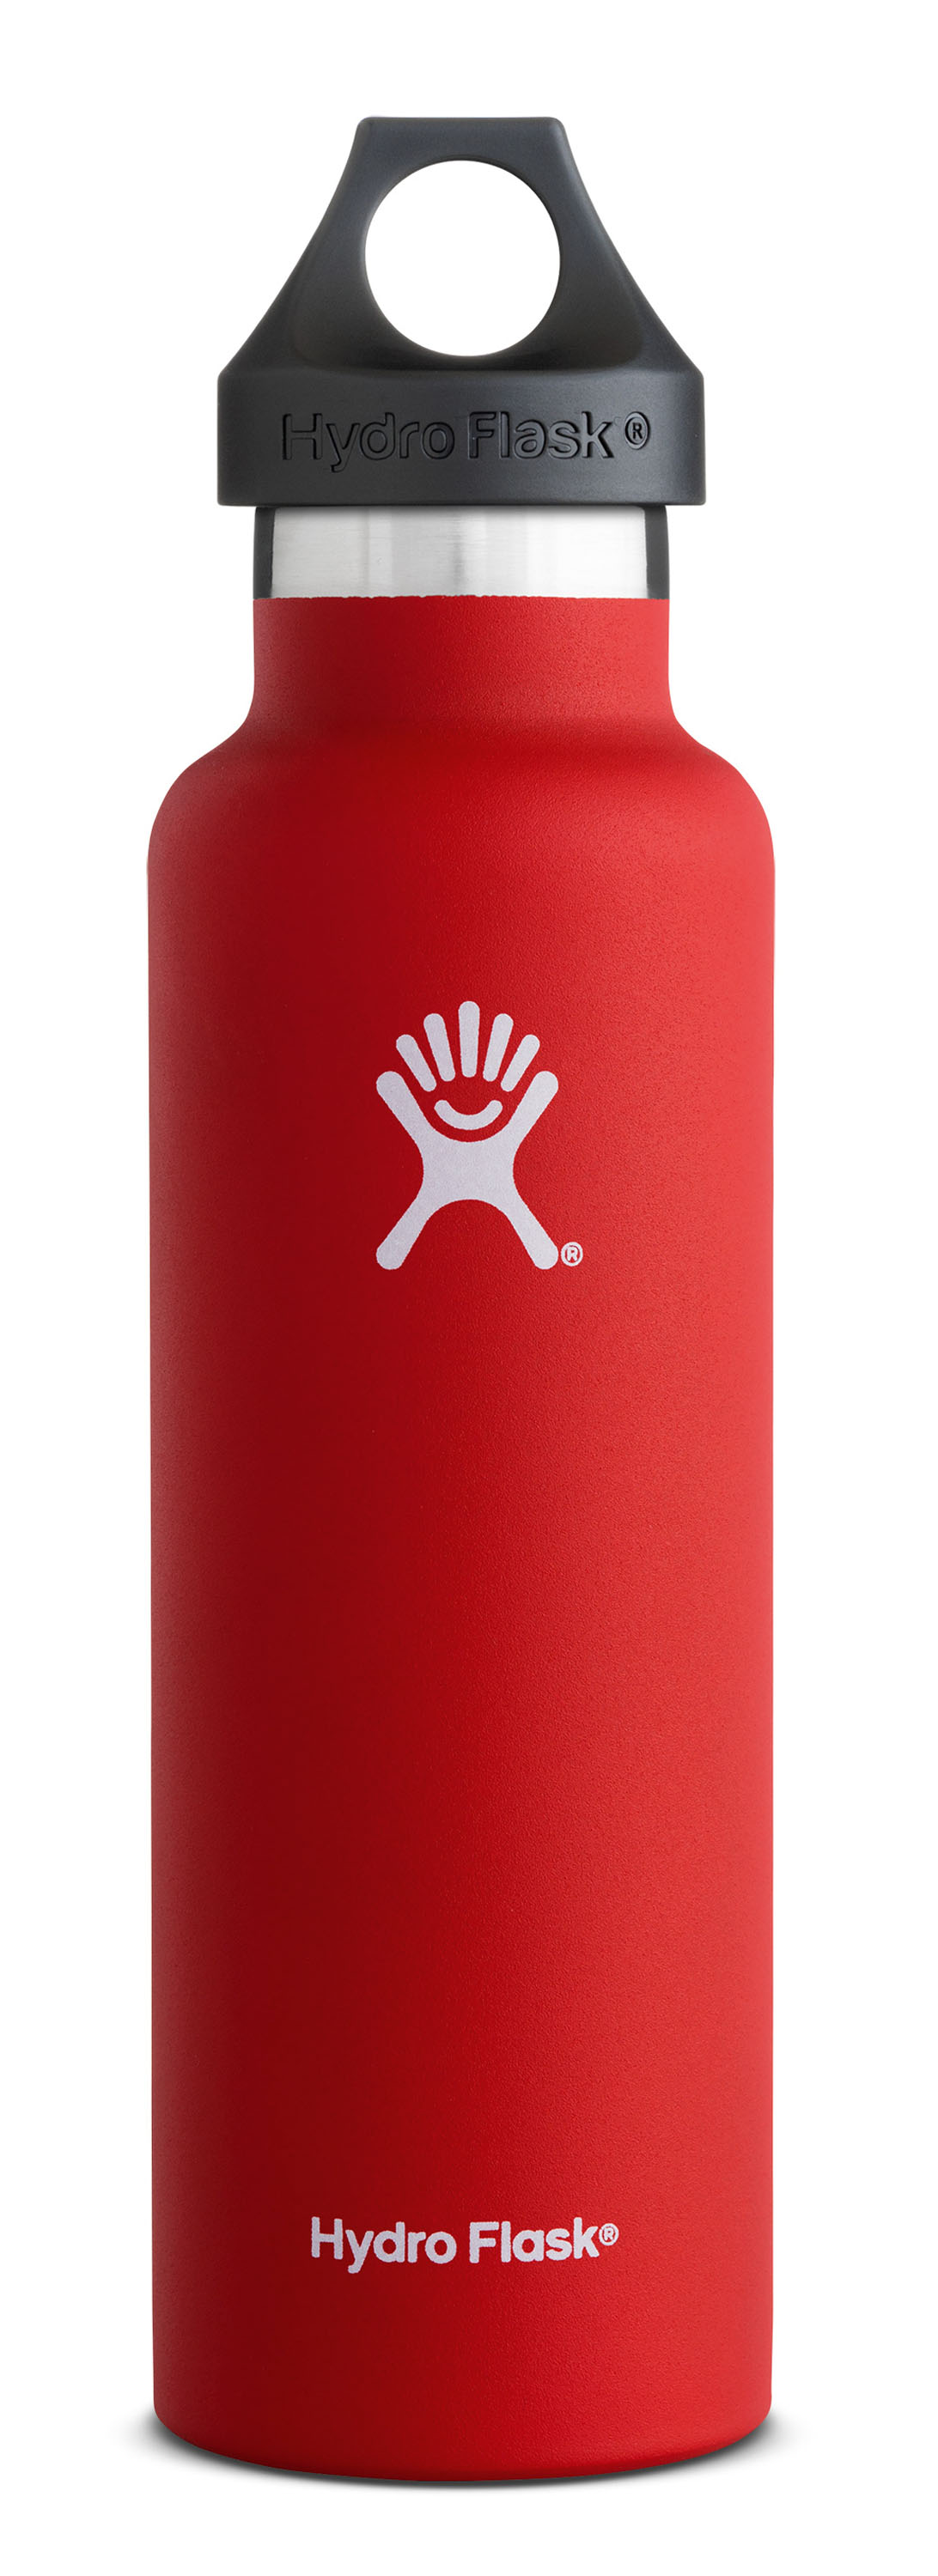 HYDROFLASK Thermoskanne 0,6l Standard Mouth Flasche. Schöne Thermos- kanne aus doppelwandigem Edelstahl. Grif ge und angenehme Außenseite. € 32,95 © Hydroflask